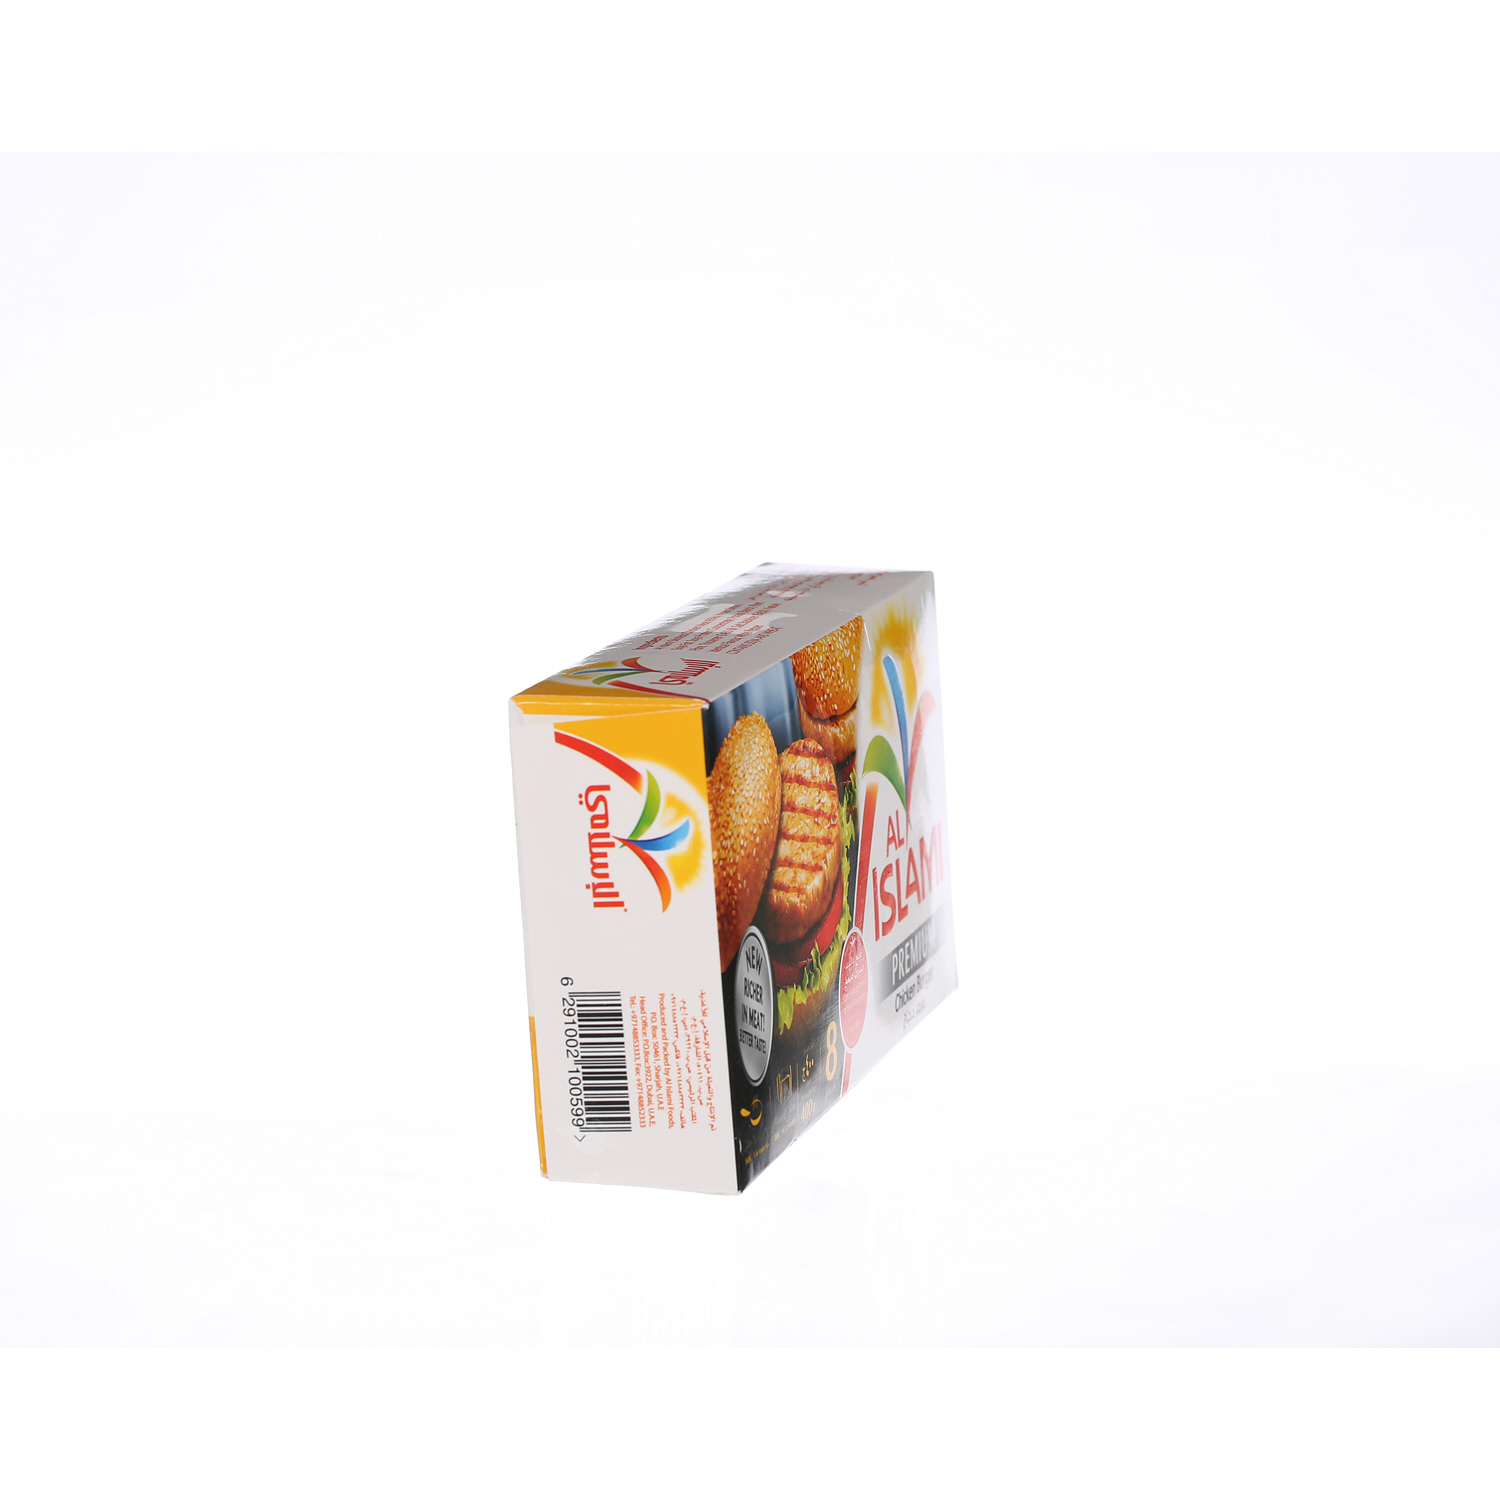 Al Islami Chicken Burger 400 g × 8 Pack